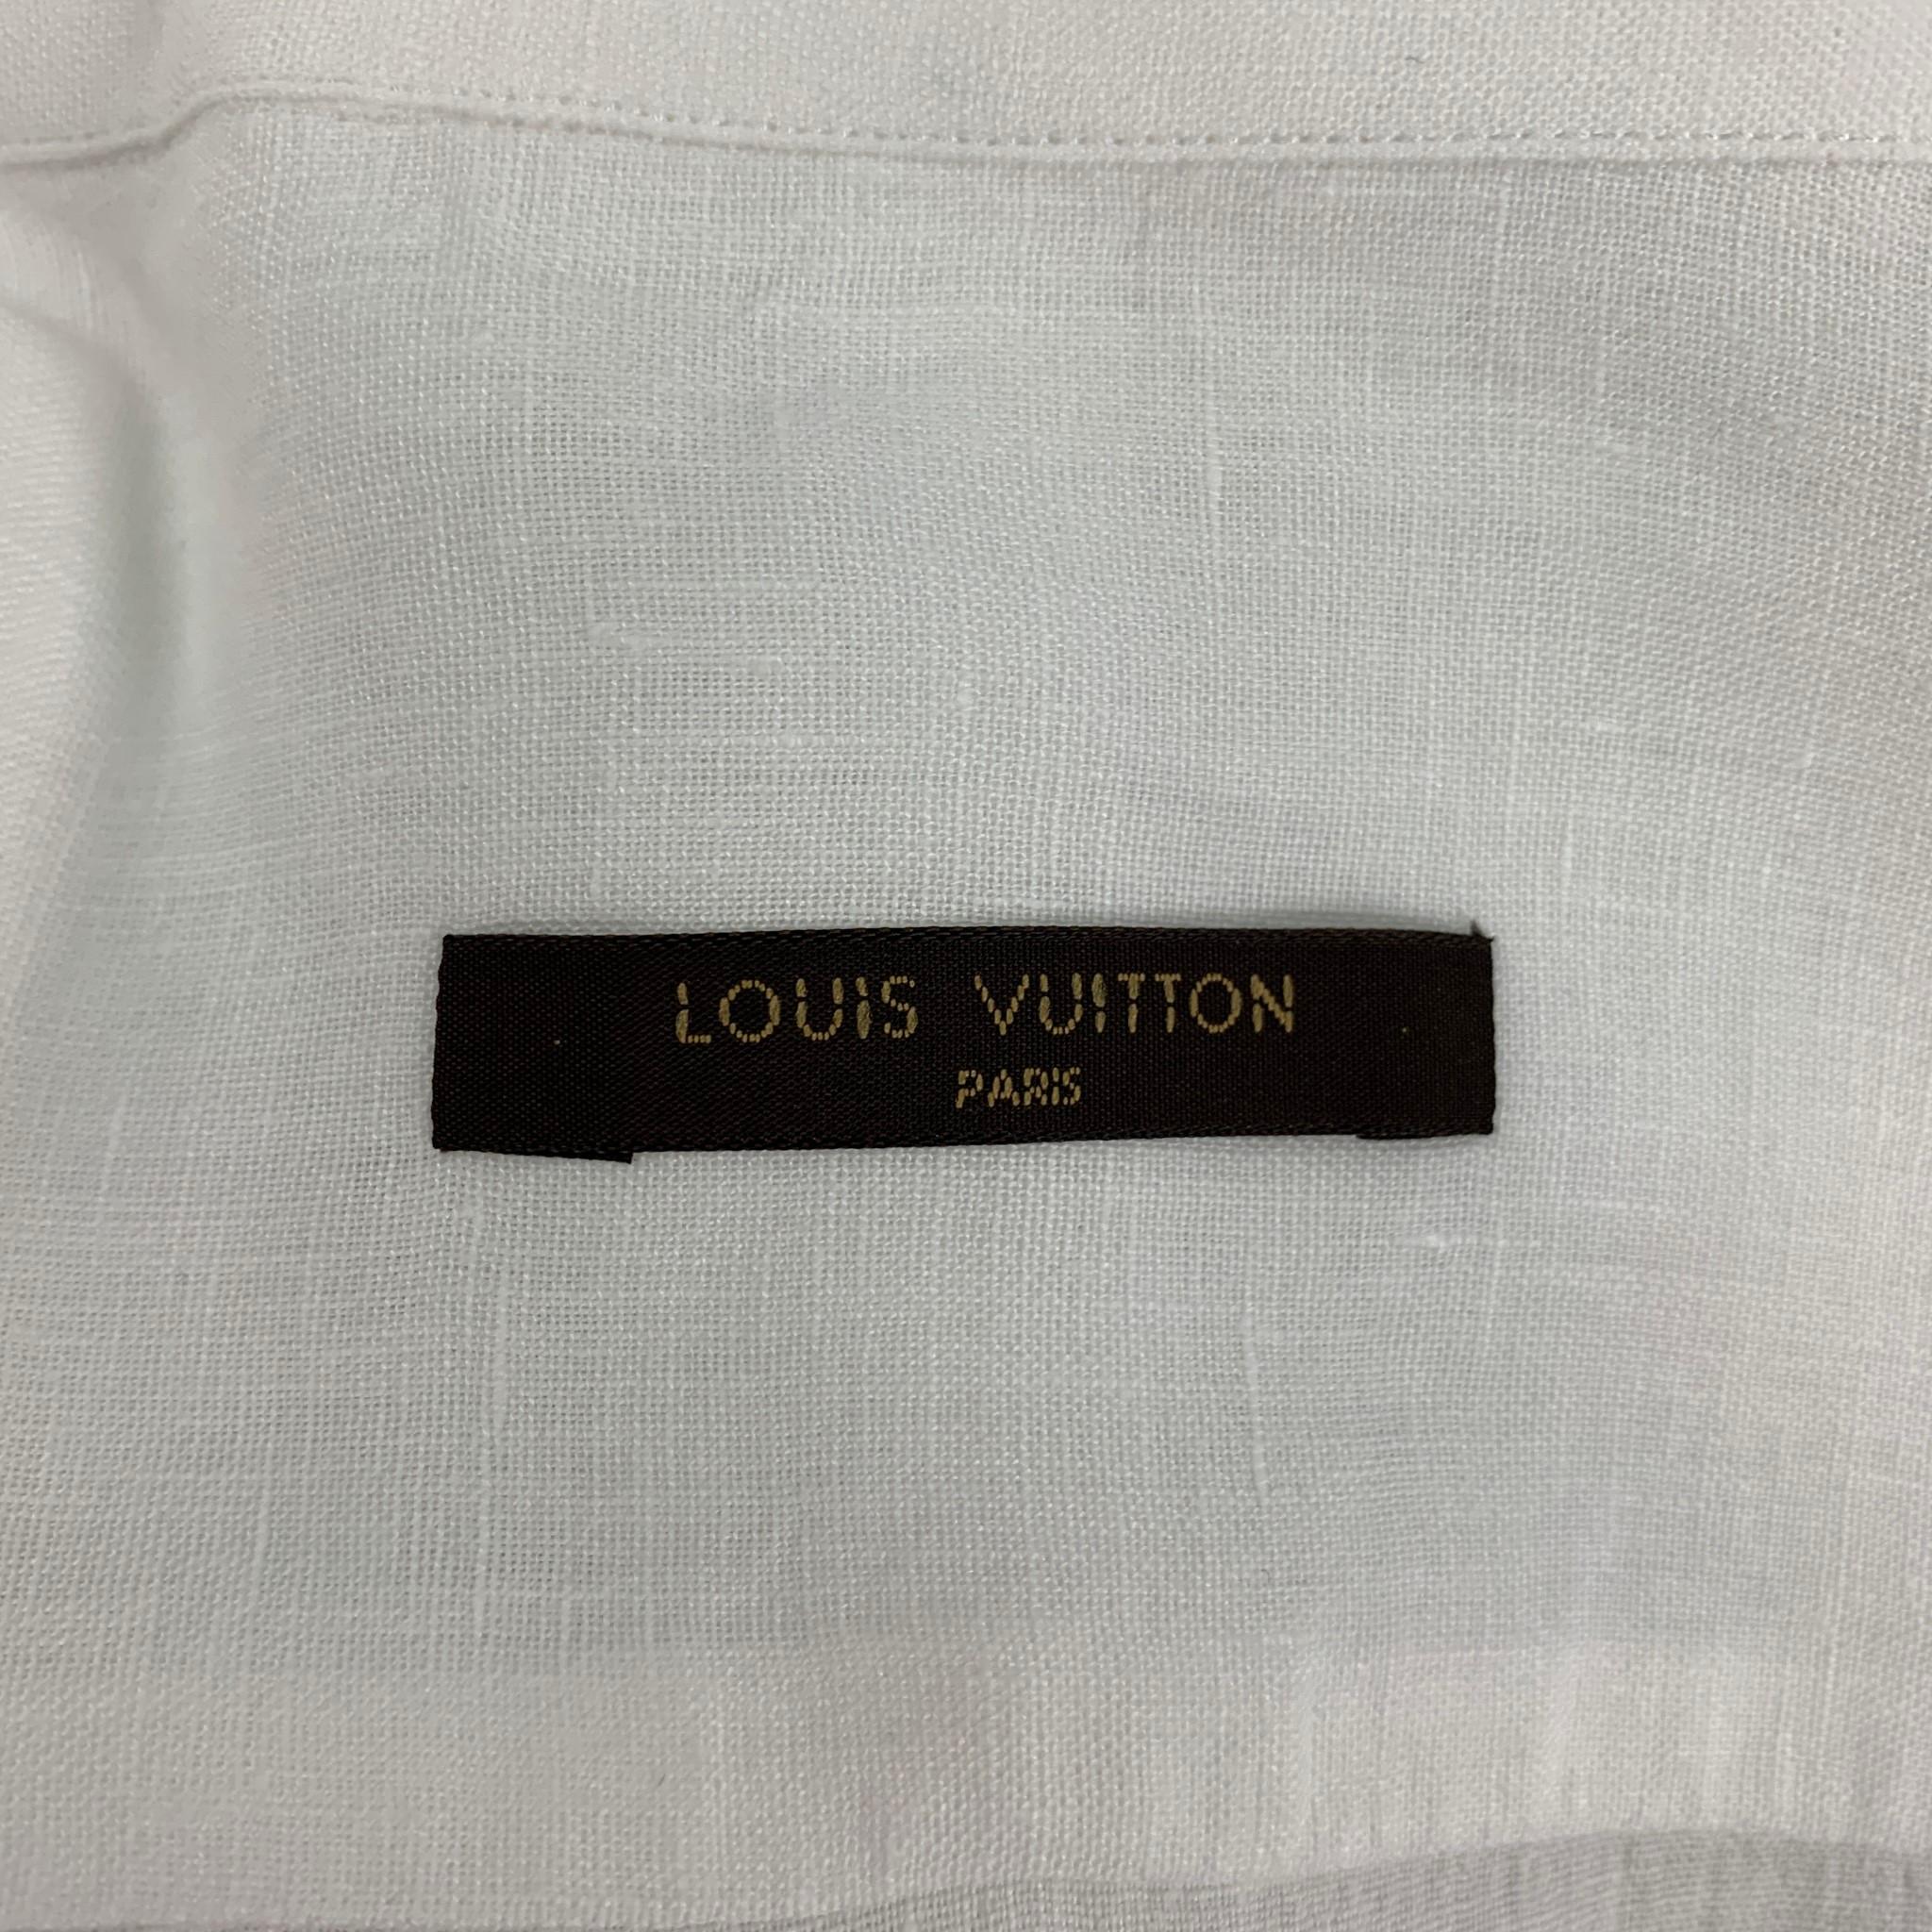 LOUIS VUITTON Size XL White Linen Button Up Long Sleeve Shirt 2